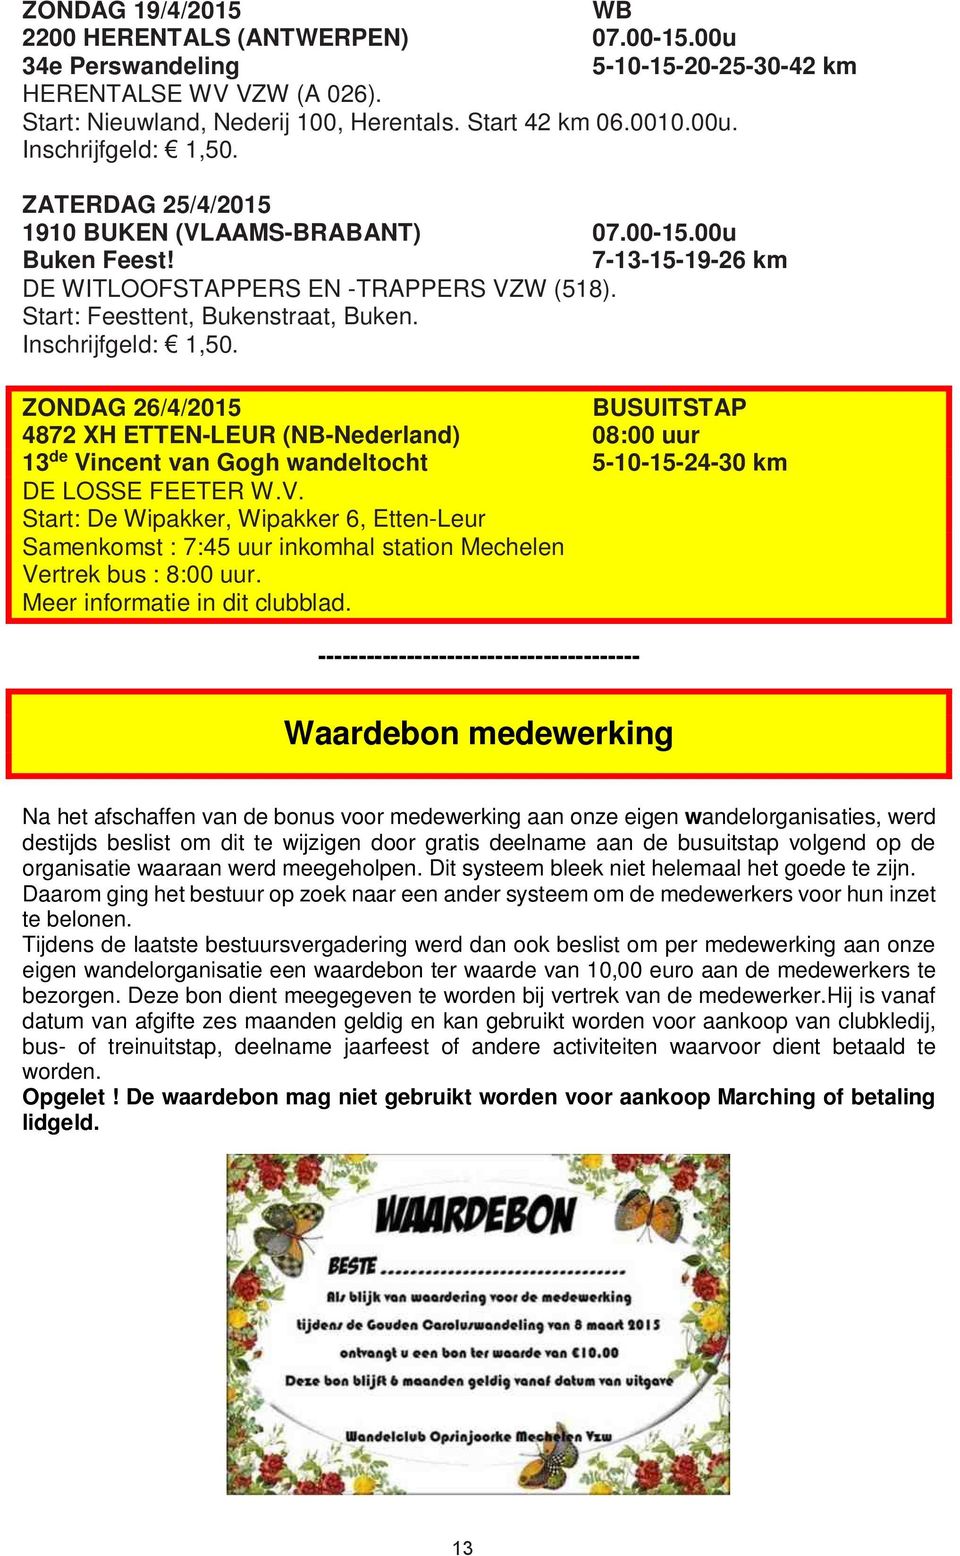 ZONDAG 26/4/2015 BUSUITSTAP 4872 XH ETTEN-LEUR (NB-Nederland) 08:00 uur 13 de Vincent van Gogh wandeltocht 5-10-15-24-30 km DE LOSSE FEETER W.V. Start: De Wipakker, Wipakker 6, Etten-Leur Samenkomst : 7:45 uur inkomhal station Mechelen Vertrek bus : 8:00 uur.